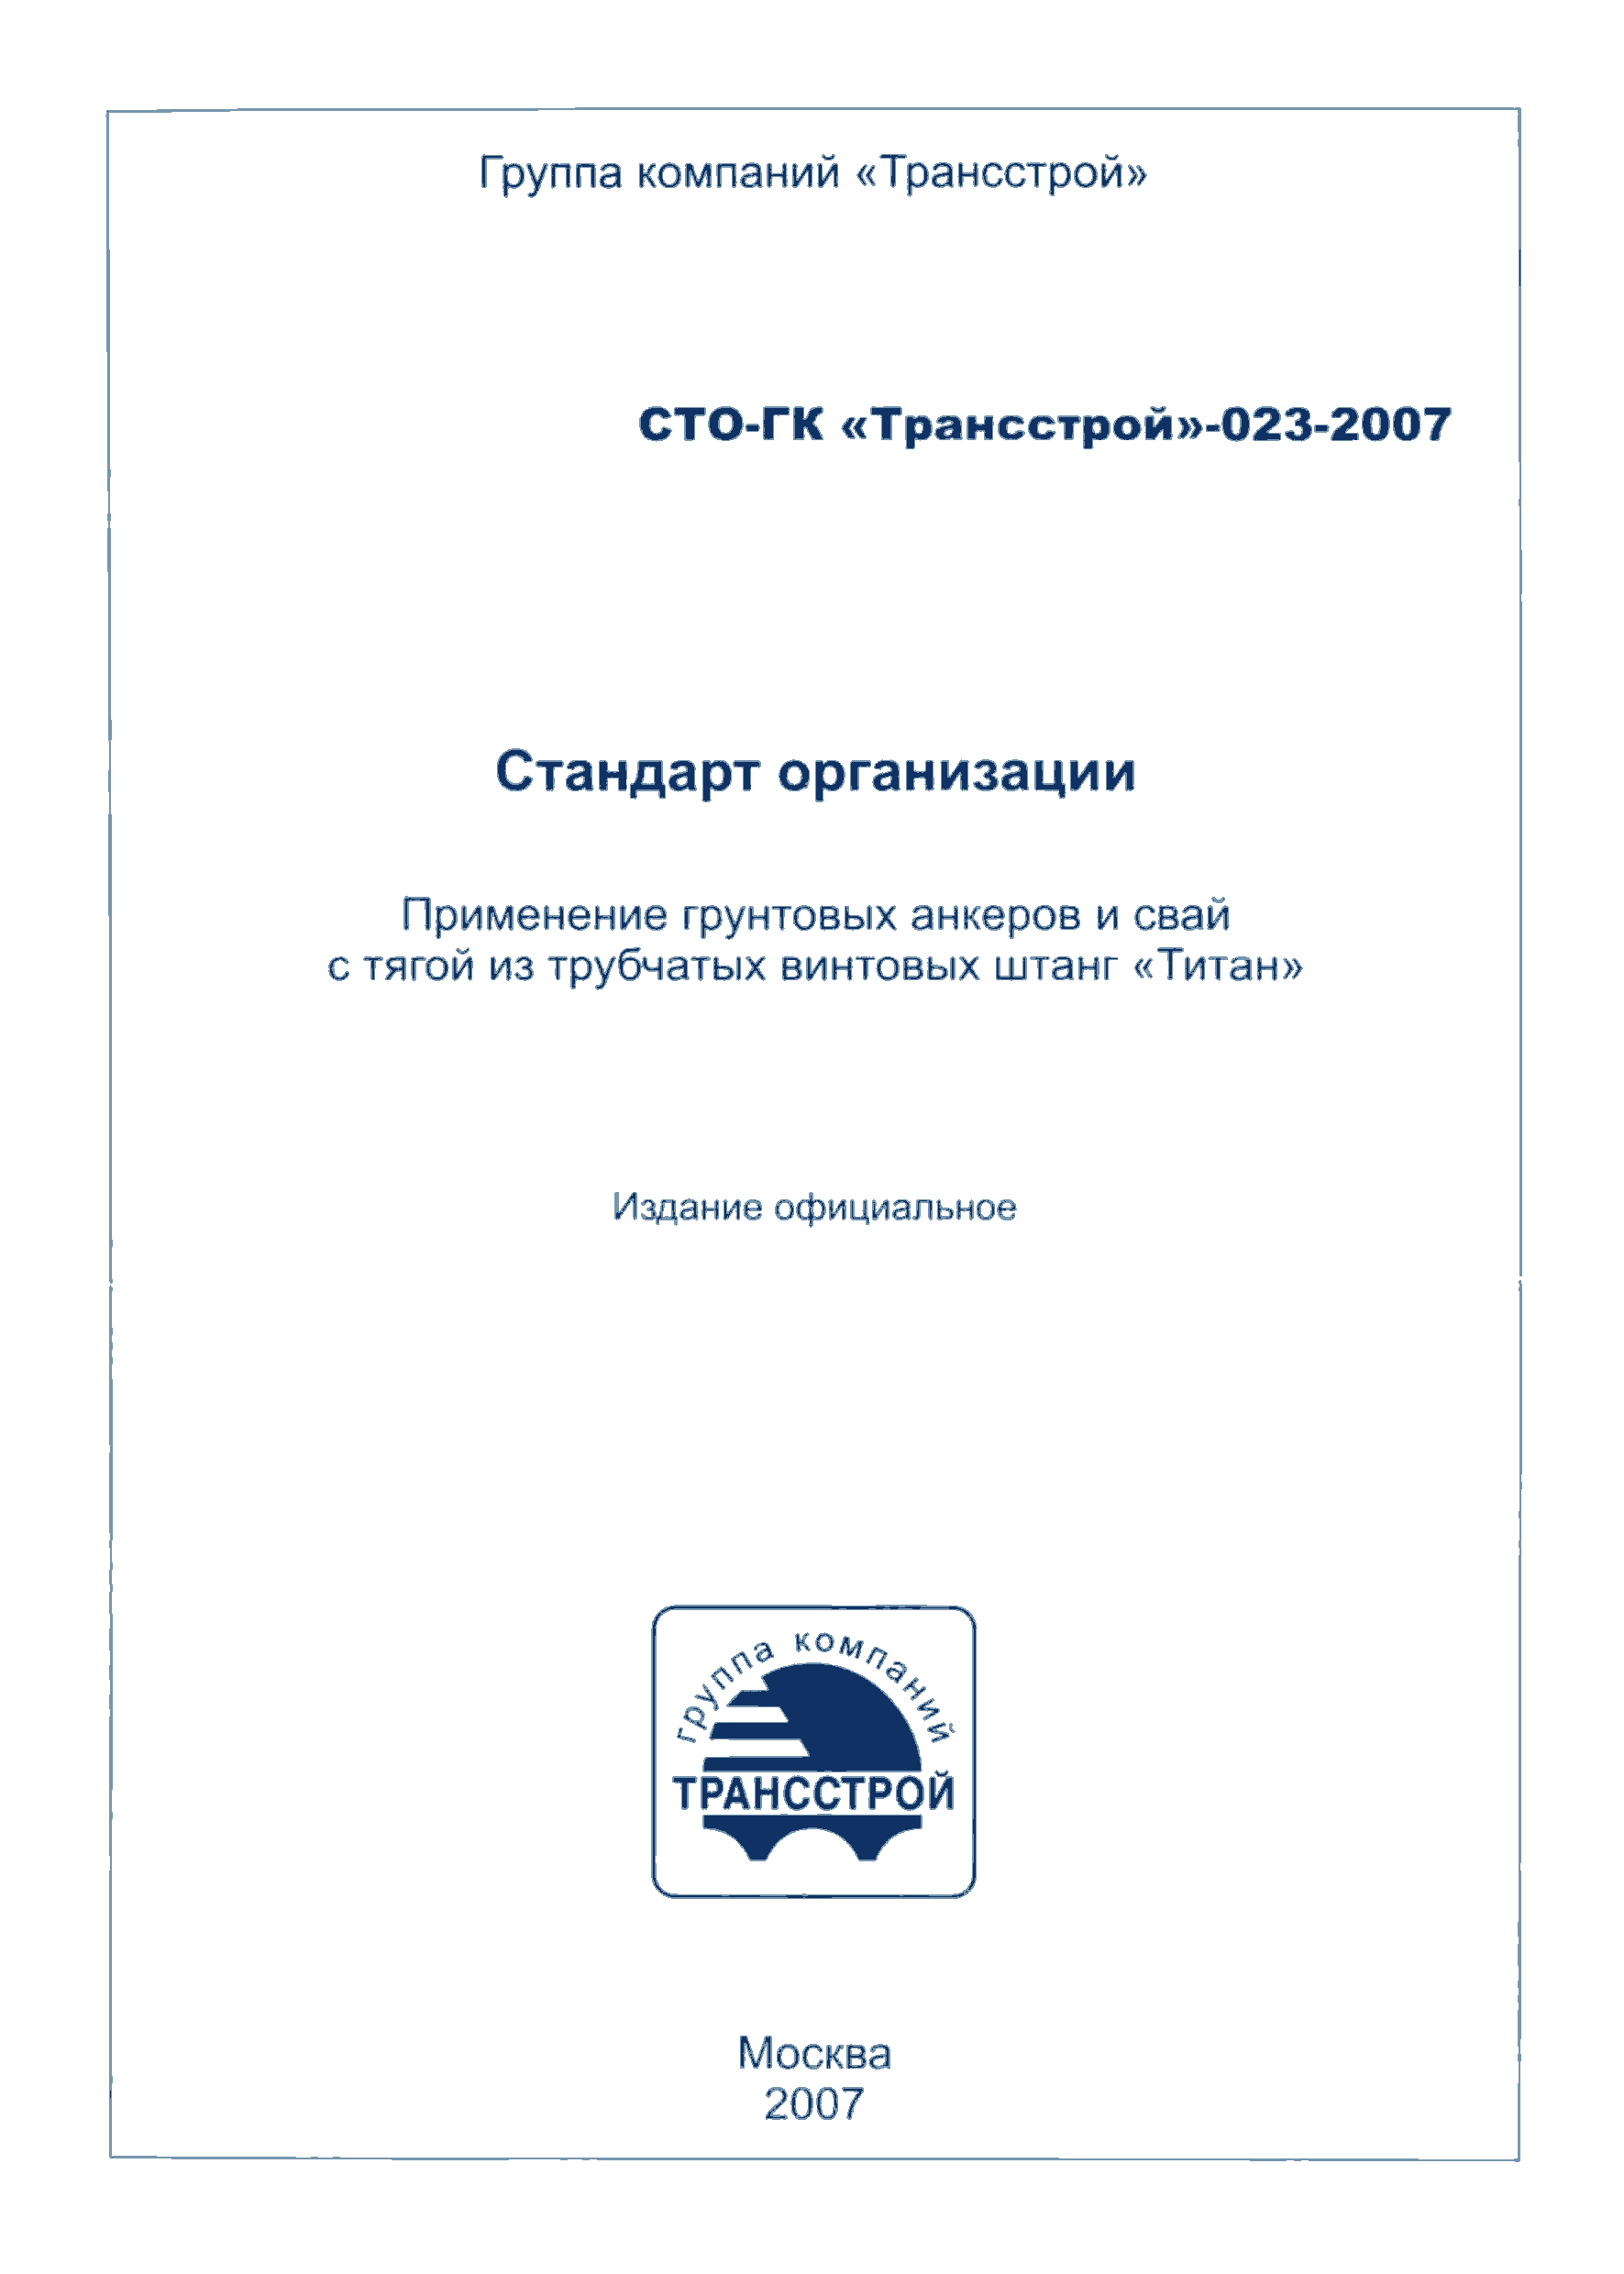 СТО-ГК "Трансстрой" 023-2007